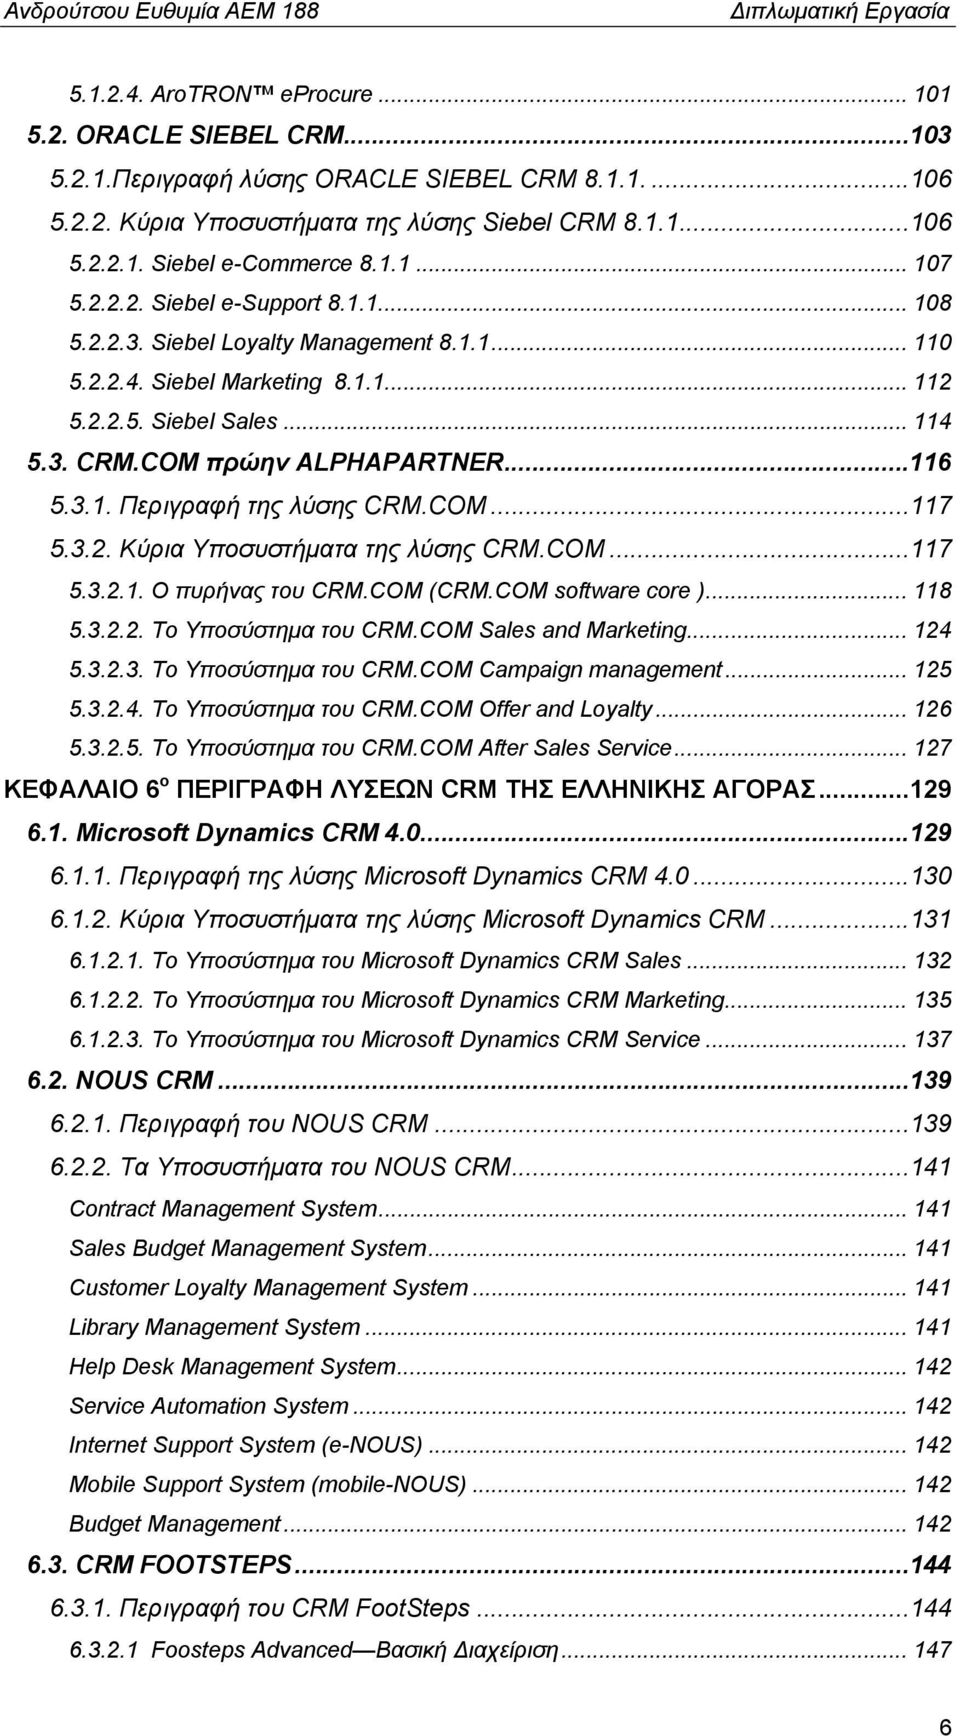 ..116 5.3.1. Περιγραφή της λύσης CRM.COM...117 5.3.2. Κύρια Υποσυστήματα της λύσης CRM.COM...117 5.3.2.1. Ο πυρήνας του CRM.COM (CRM.COM software core )... 118 5.3.2.2. Το Υποσύστημα του CRM.